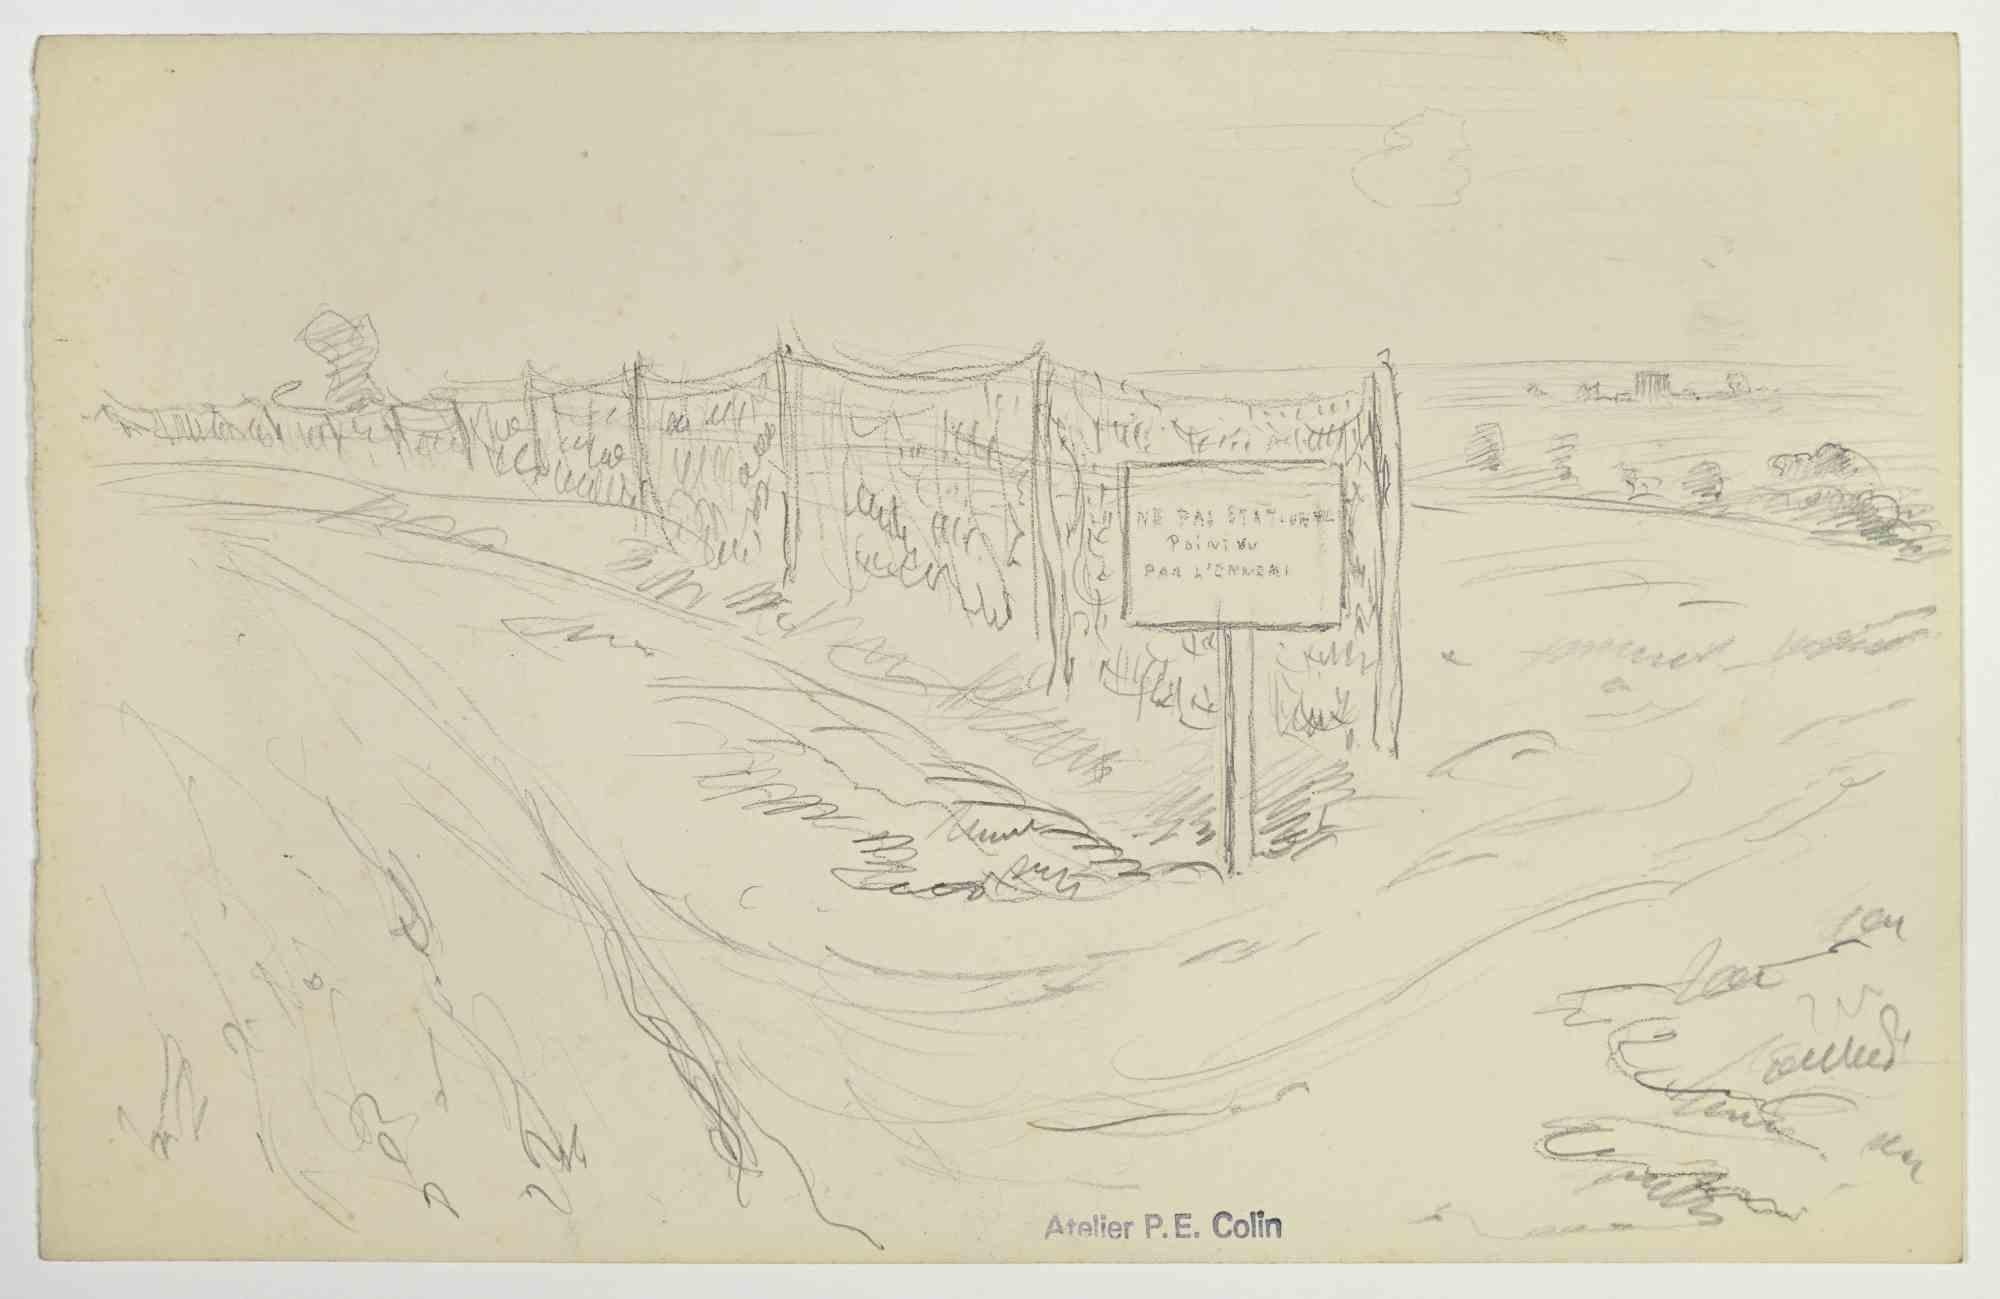 War Zone est un dessin réalisé par Paul Emile Colin au début du 20ème siècle.

Crayon de carbone sur papier ivoire

Estampillé sur la partie inférieure.

Bon état avec de légères rousseurs.

L'œuvre d'art est réalisée à l'aide de traits expressifs